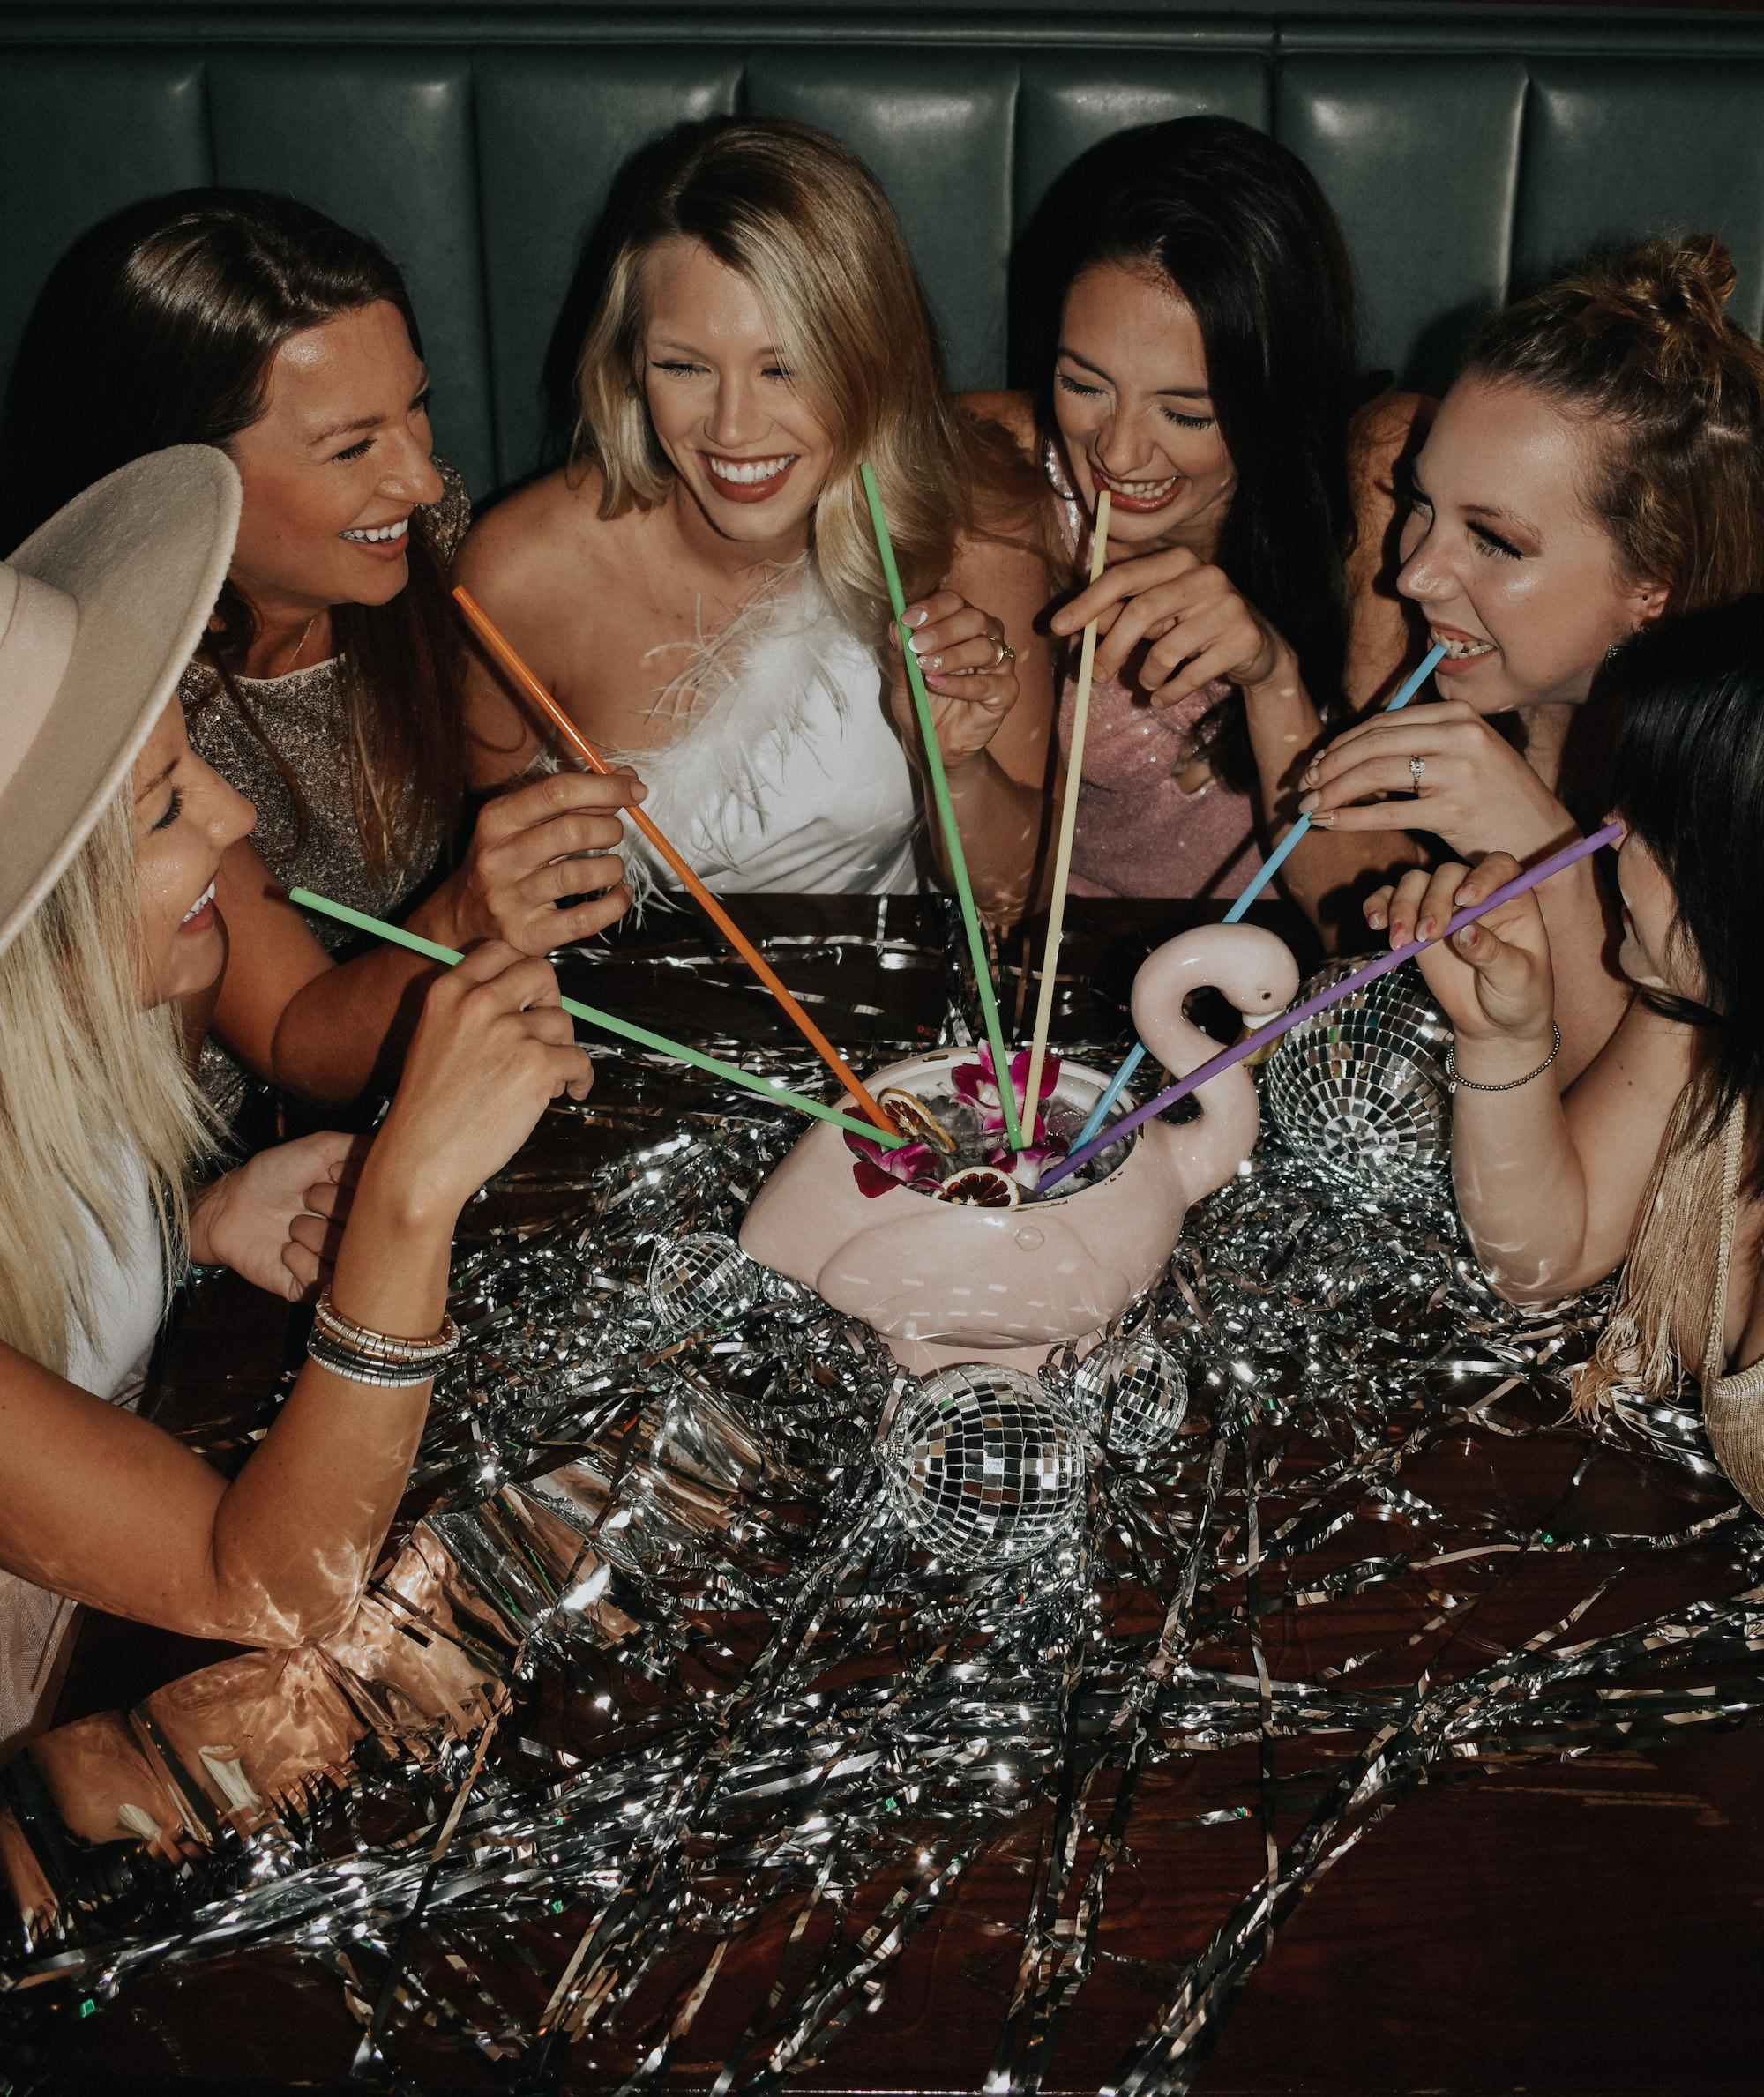 St. Pete Bachelorette Party Ideas | Flamingo Group Cocktail | Photographer The Gadabout Captures